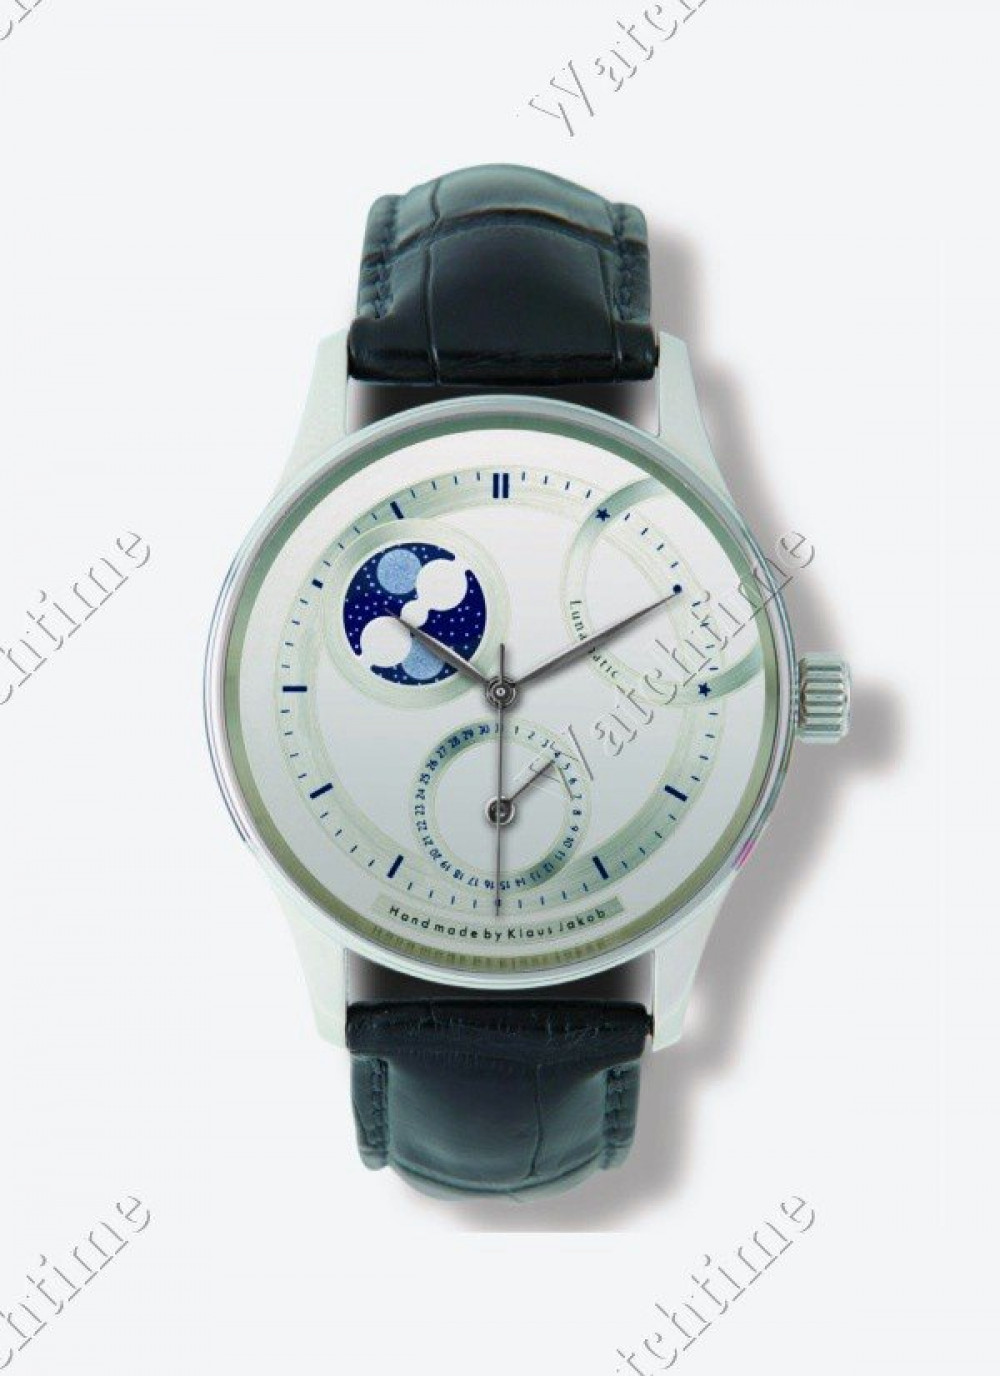 Zegarek firmy Klaus Jakob, model Lunamatik